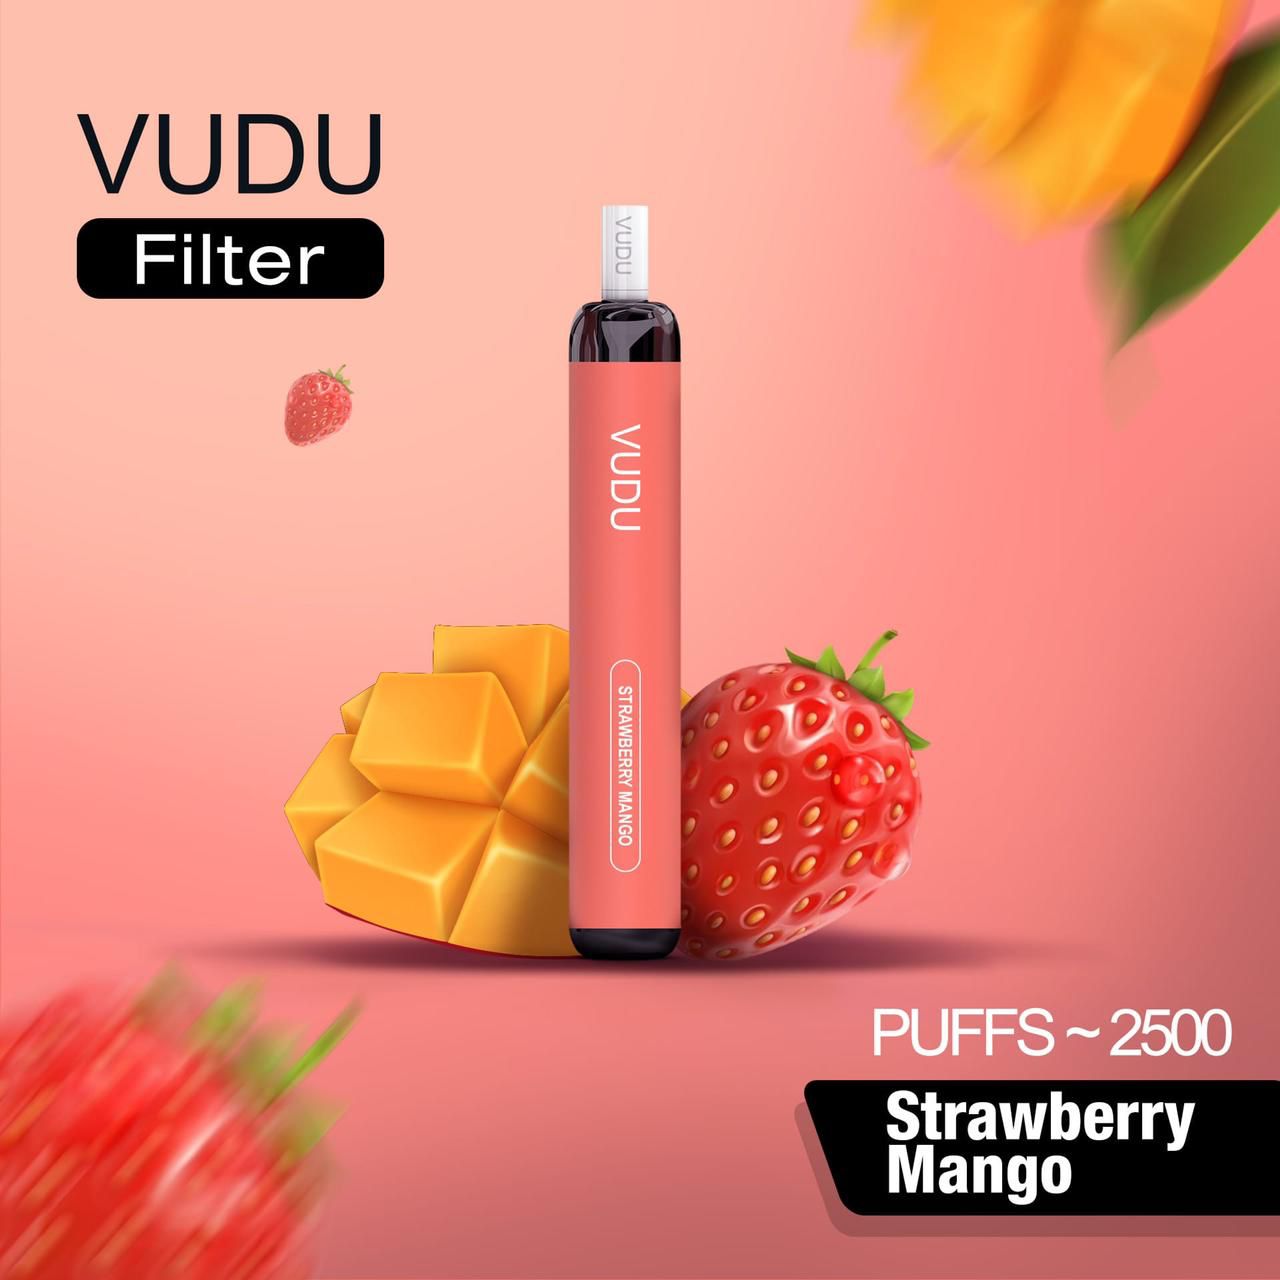 Vudu Filter 2500 Puffs Disposable Vape